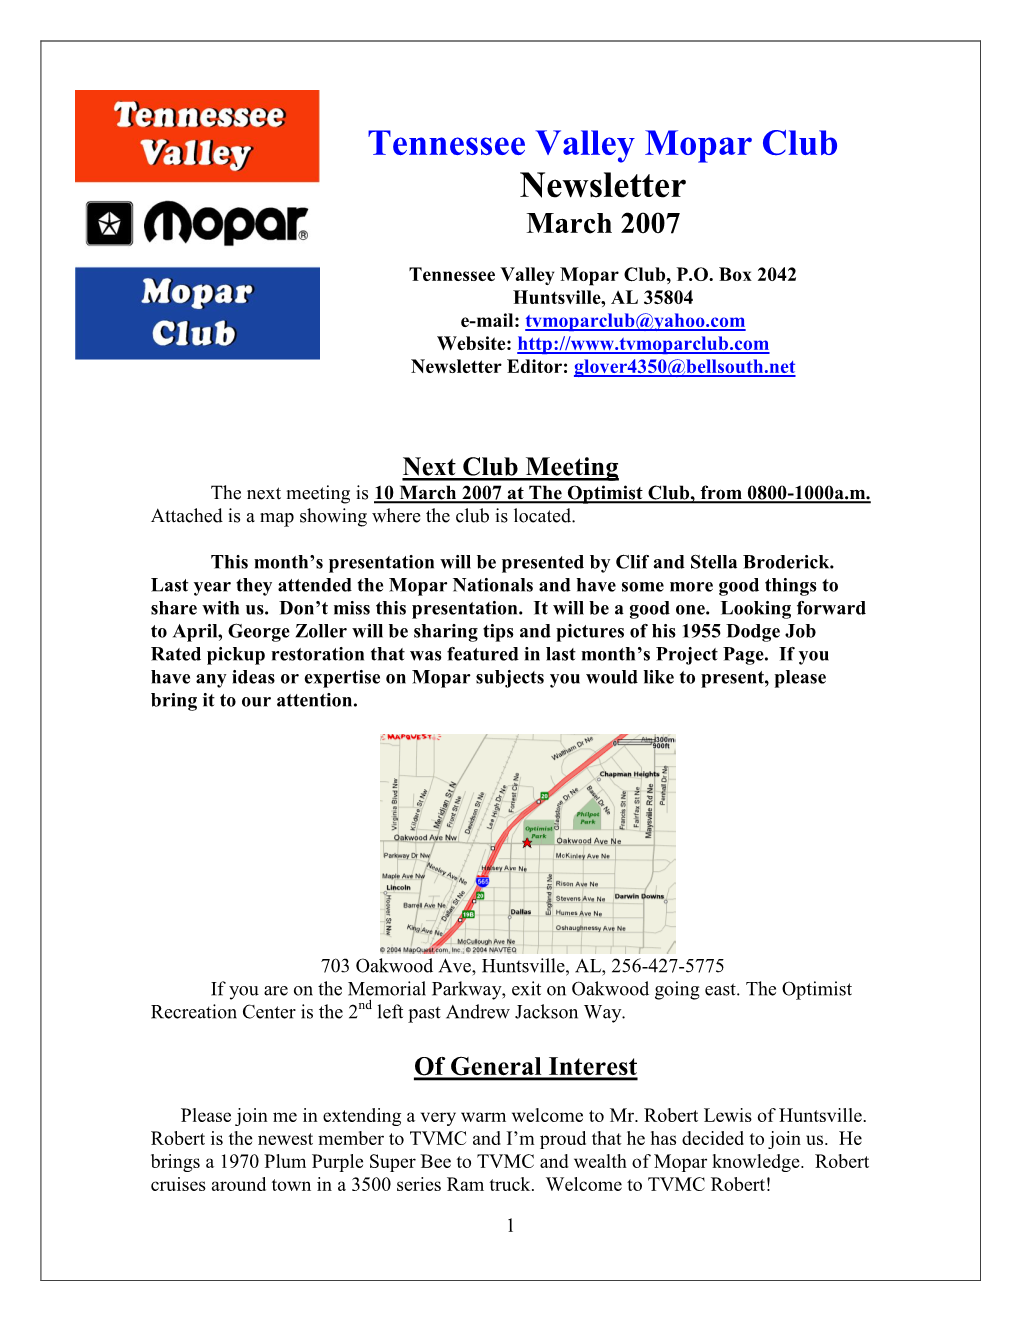 Tennessee Valley Mopar Club Newsletter March 2007